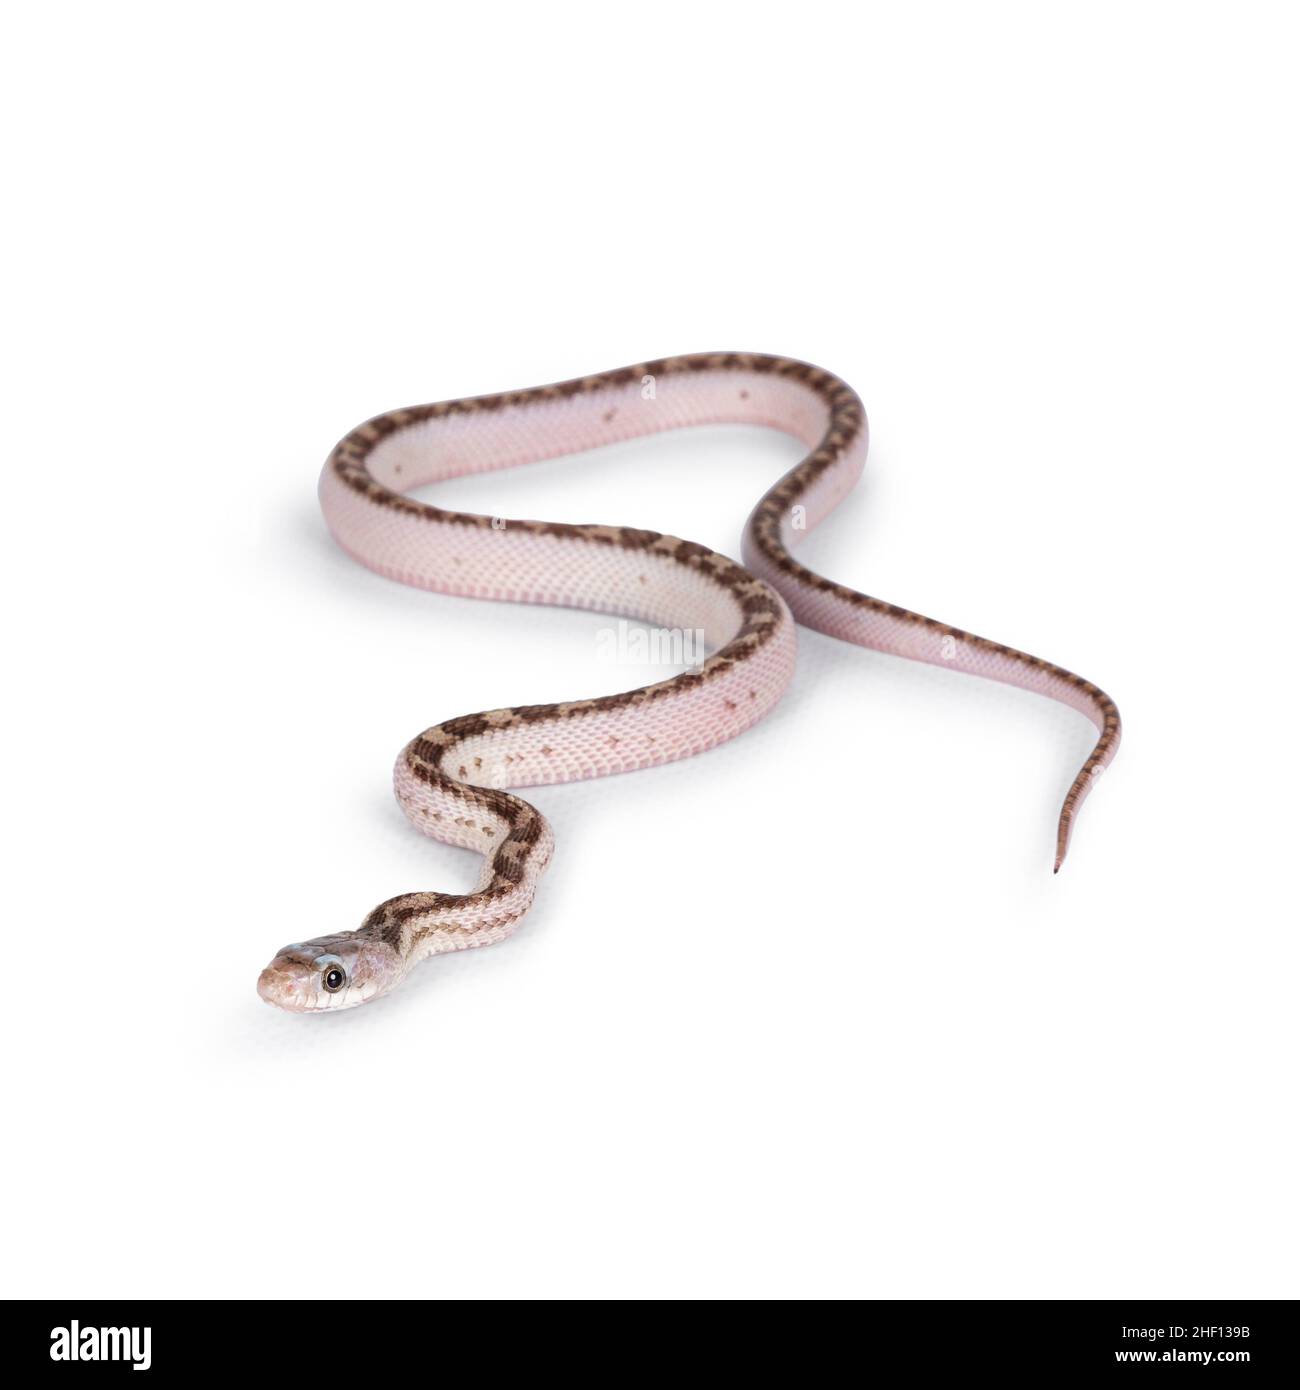 Babyweißseitige Texas Rattenschlange oder die Elaphe obsoleta lindheimeri krabbeln über weißen soliden Hintergrund. Stockfoto